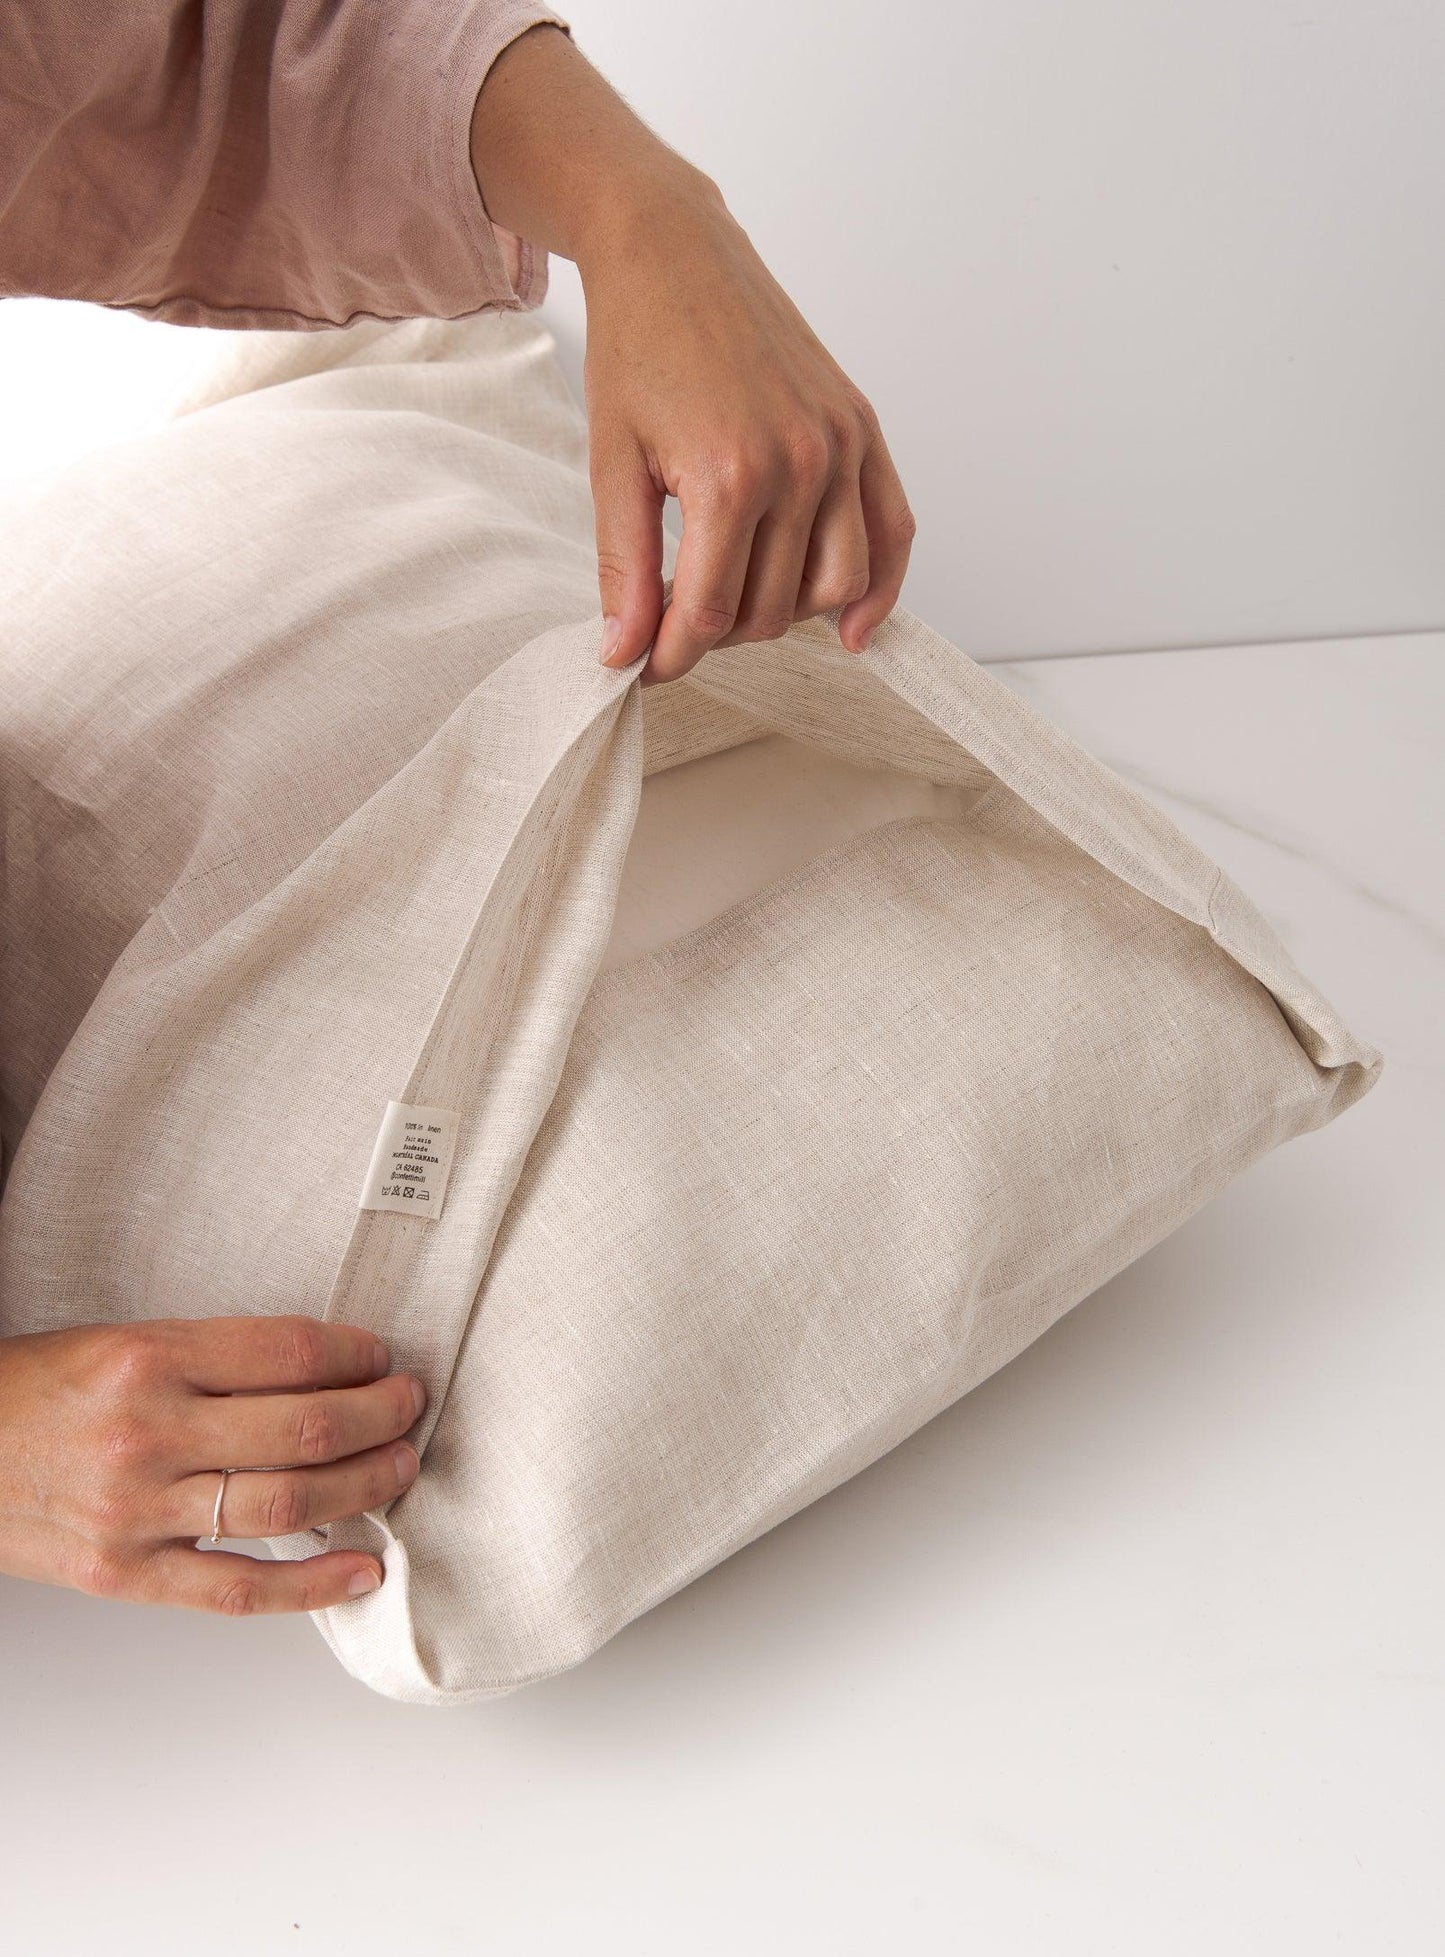 Linen pillowcase - Confetti Mill